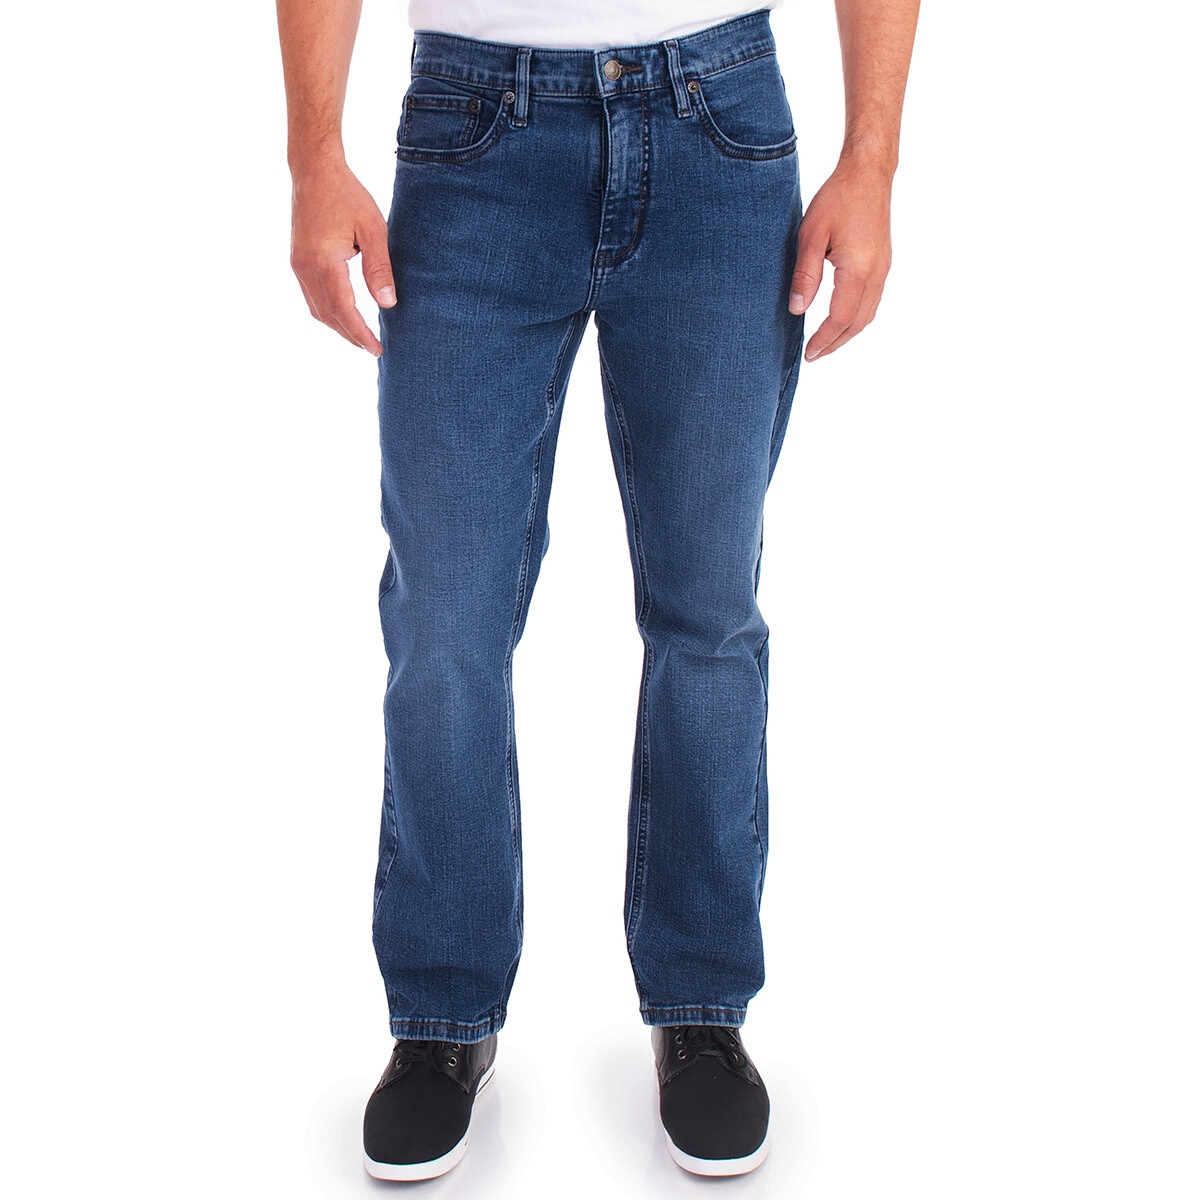 Urban Star Jeans para Caballero Varias Tallas y Colores